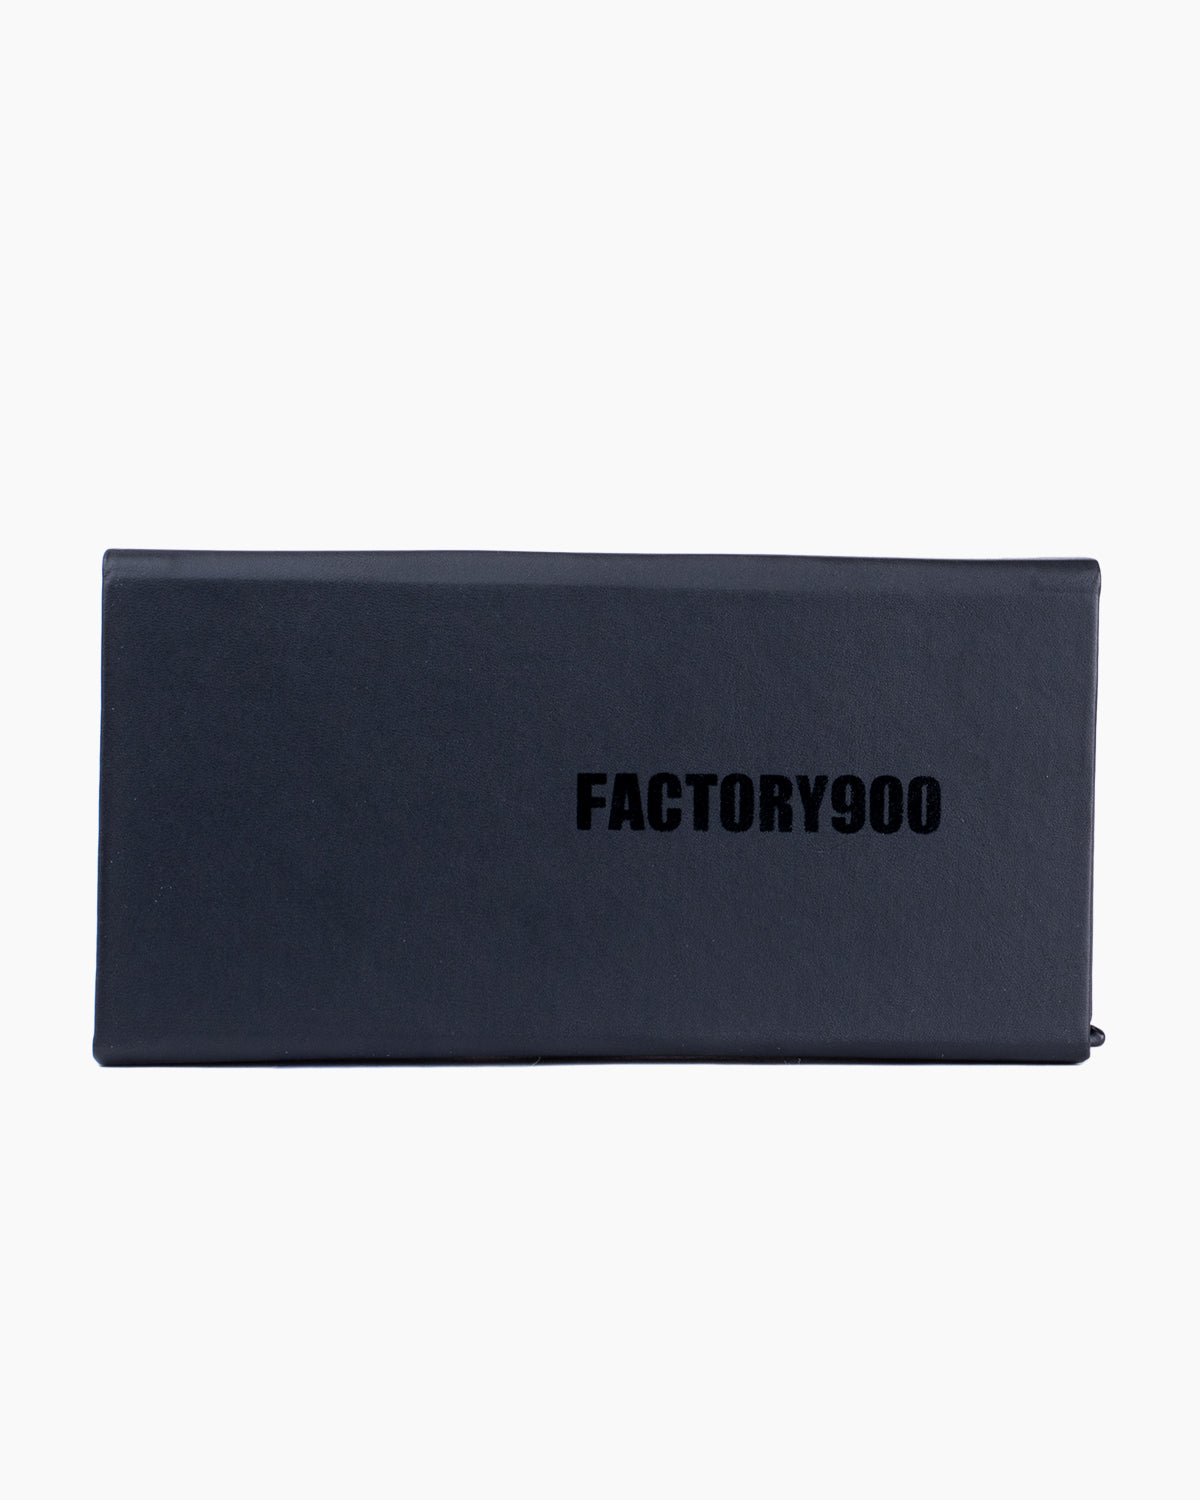 Factory 900 - RF-170 - 897 | Bar à lunettes